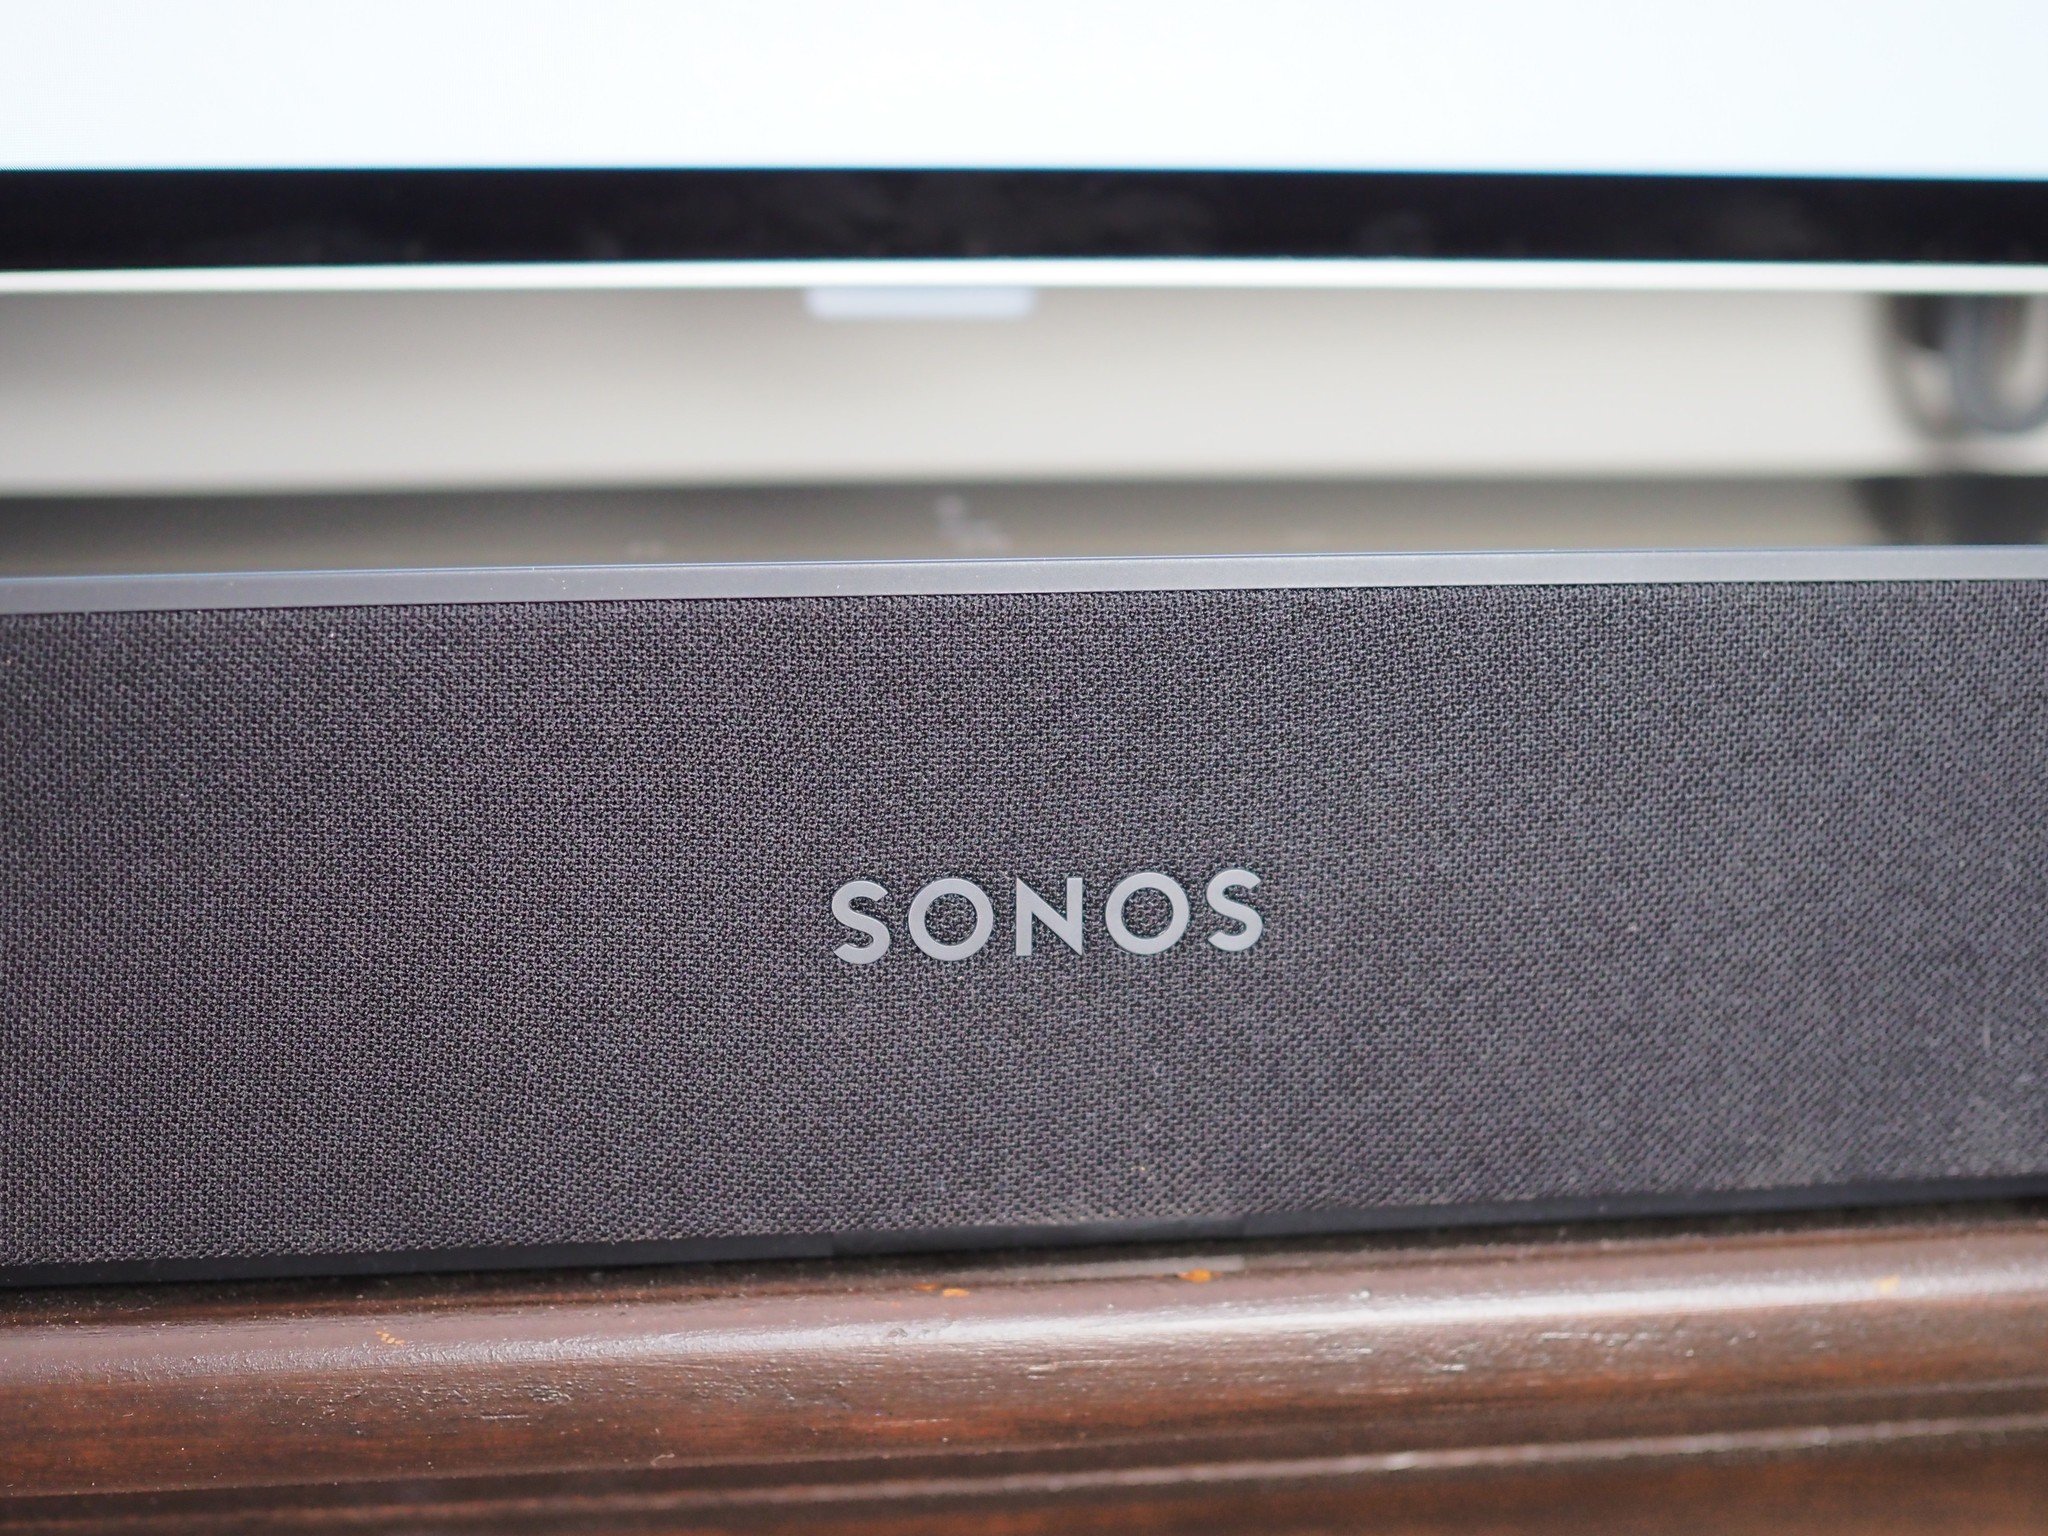 Best Sonos speakers 2021